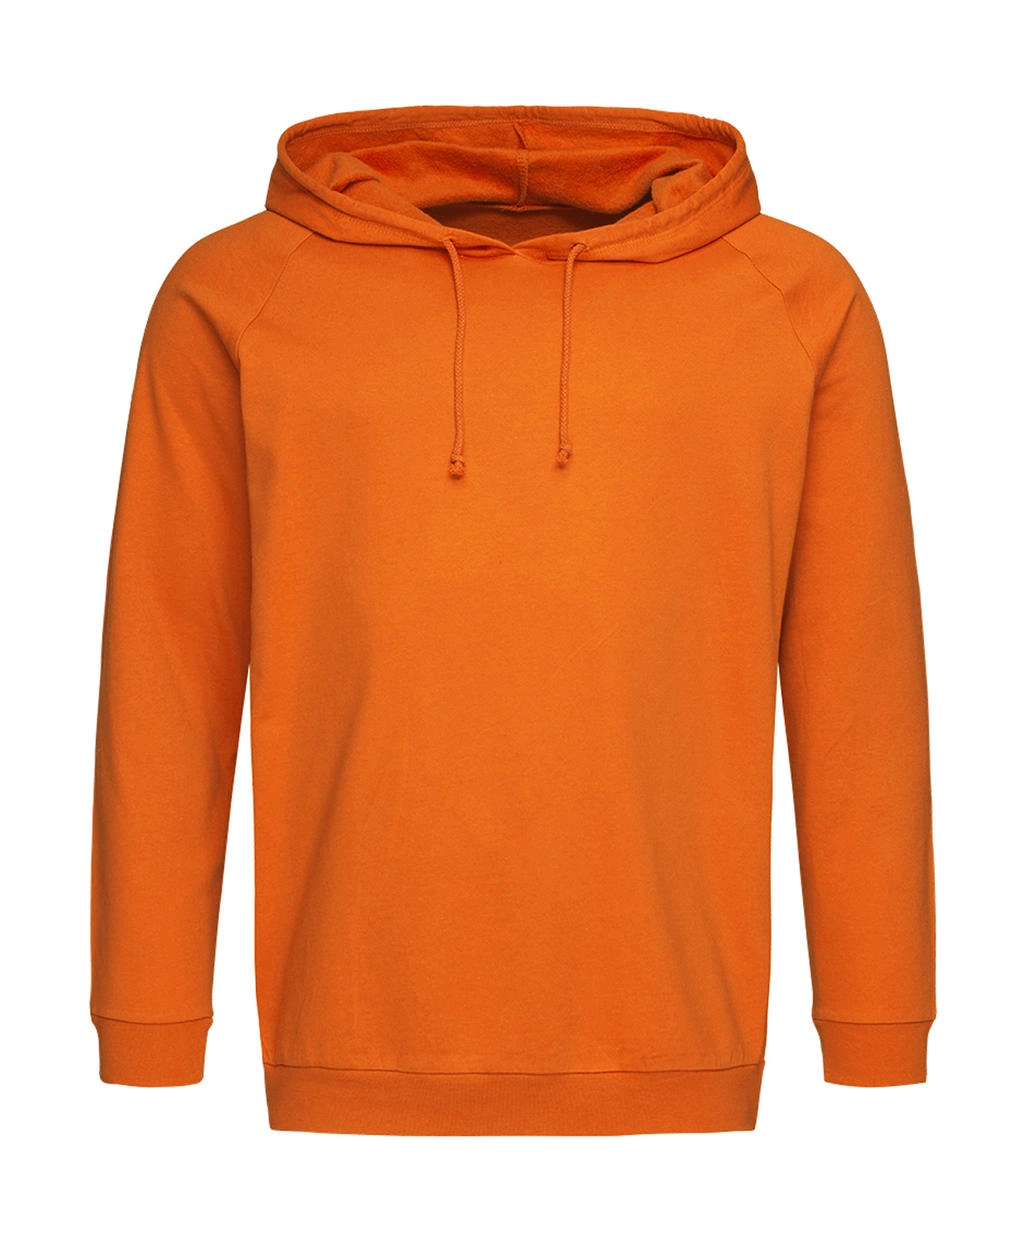 Unisex Sweat Hoodie Light zum Besticken und Bedrucken in der Farbe Orange mit Ihren Logo, Schriftzug oder Motiv.